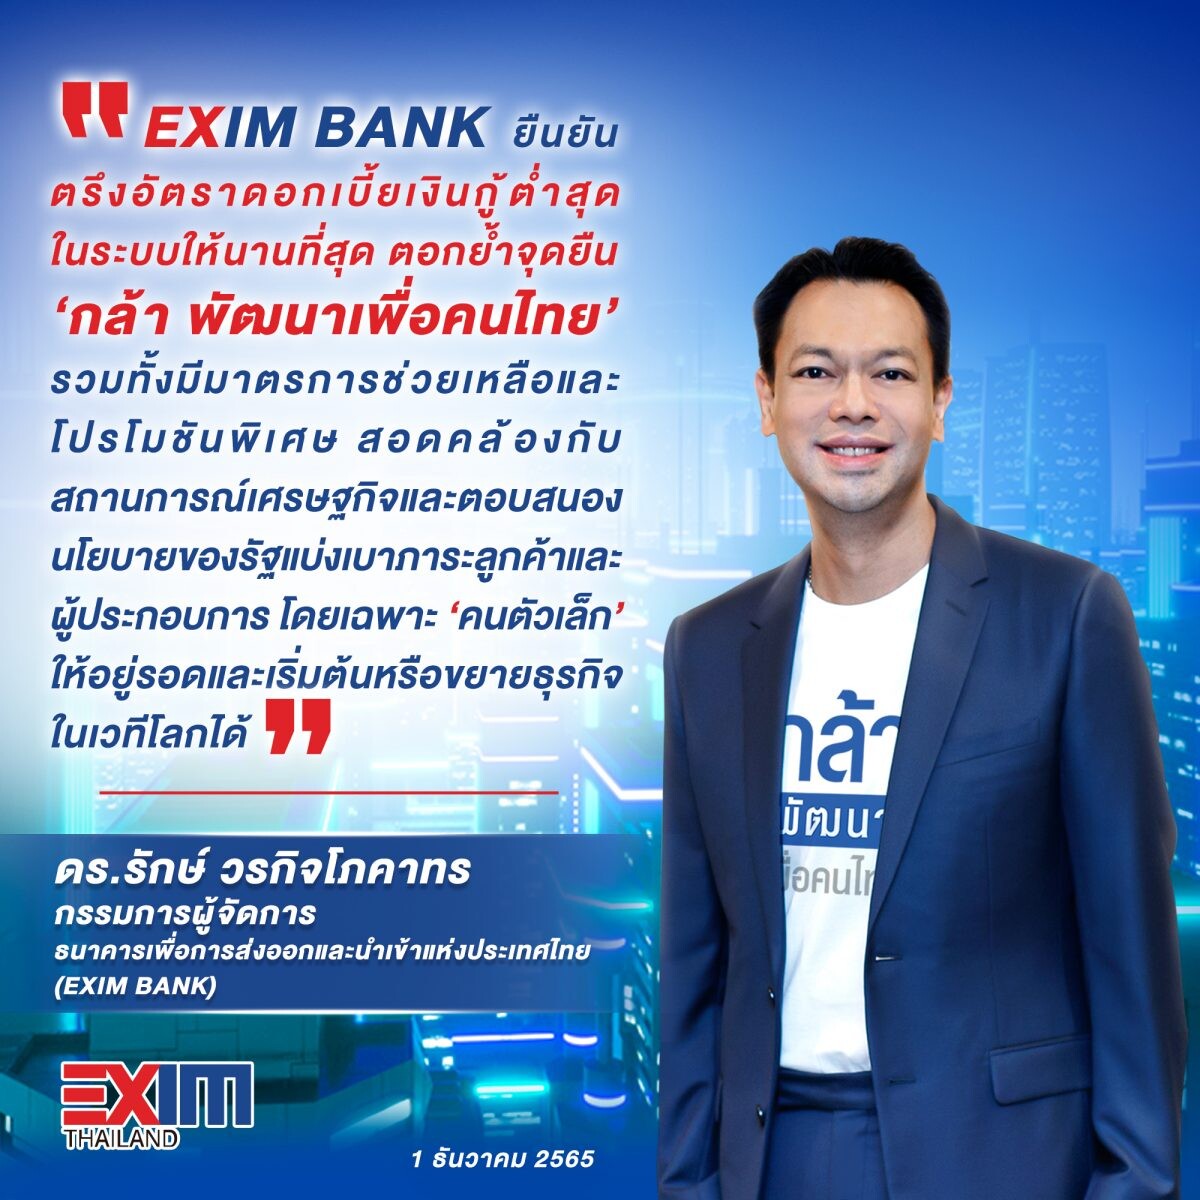 EXIM BANK ยืนยันตรึงอัตราดอกเบี้ยเงินกู้ต่ำสุดในระบบให้นานที่สุด ตอกย้ำจุดยืน "กล้า พัฒนาเพื่อคนไทย"